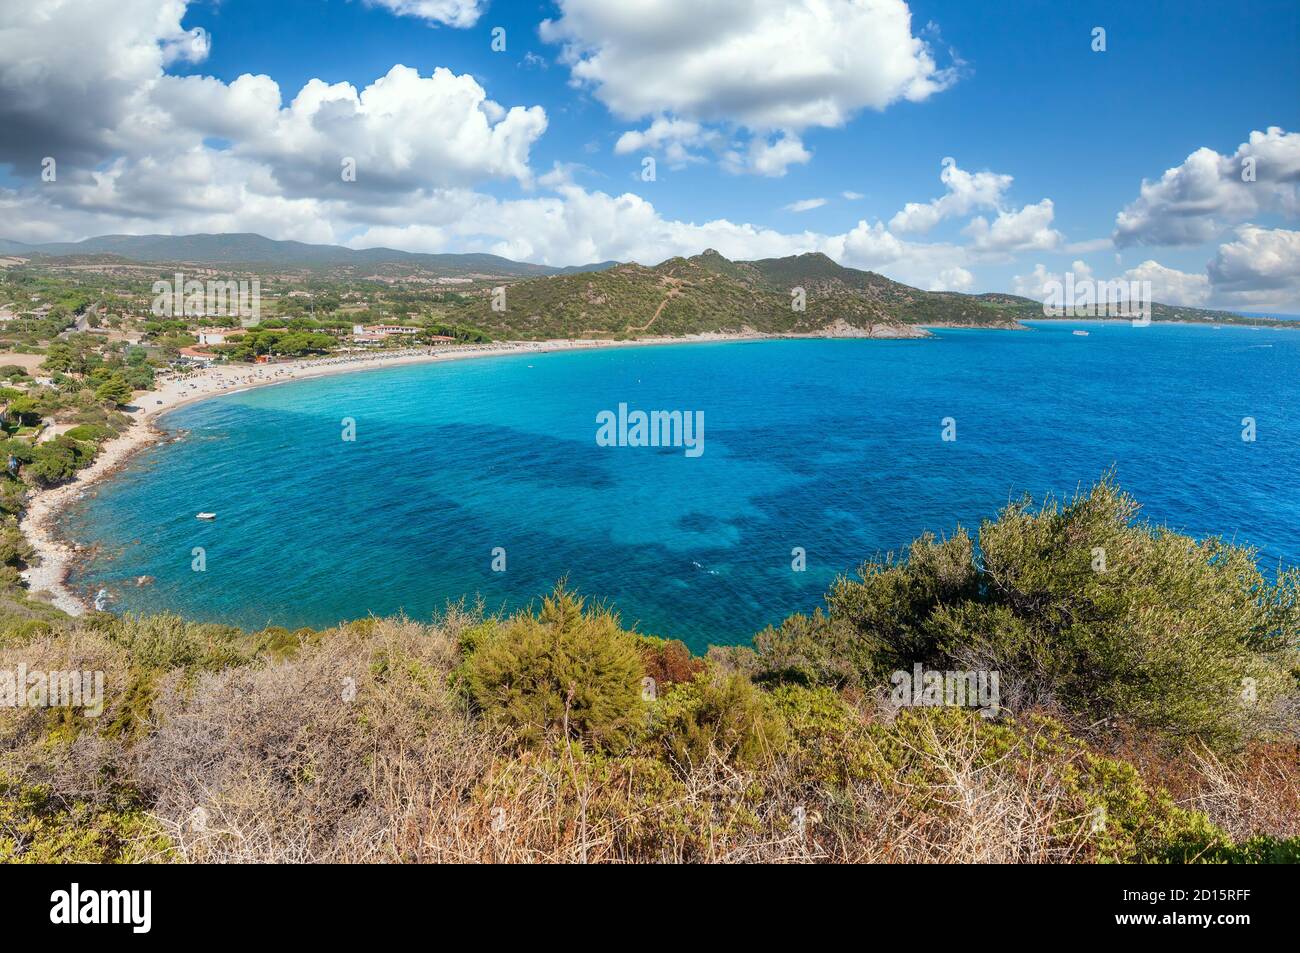 Paysage de la côte de la Sardaigne - côte sud Villasimius, dans une journée ensoleillée et nuageux Banque D'Images